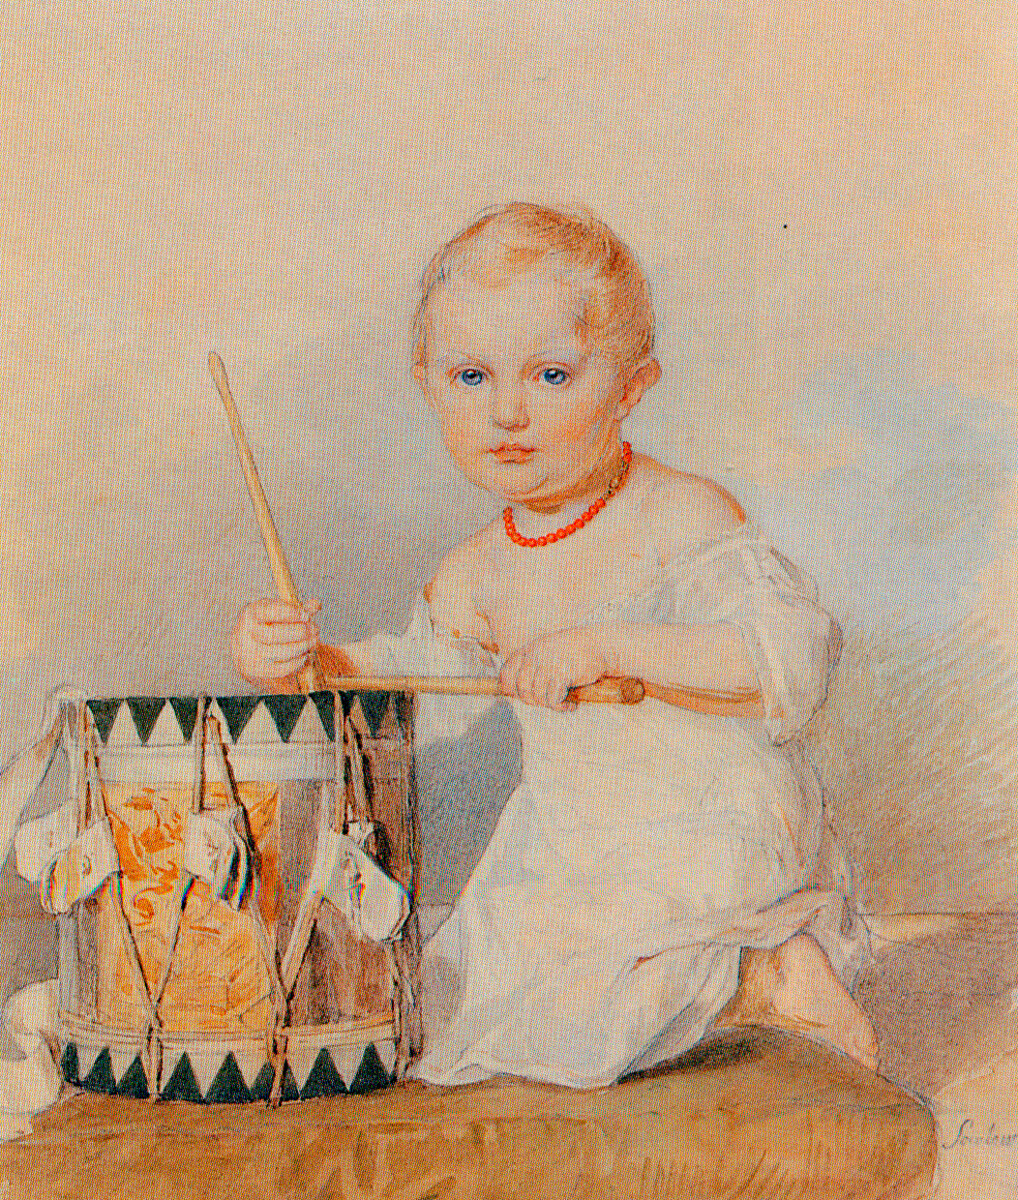 Retrato del Gran Duque Konstantín Nikoláievich de niño, finales de la década de 1820, Piotr Sokolov